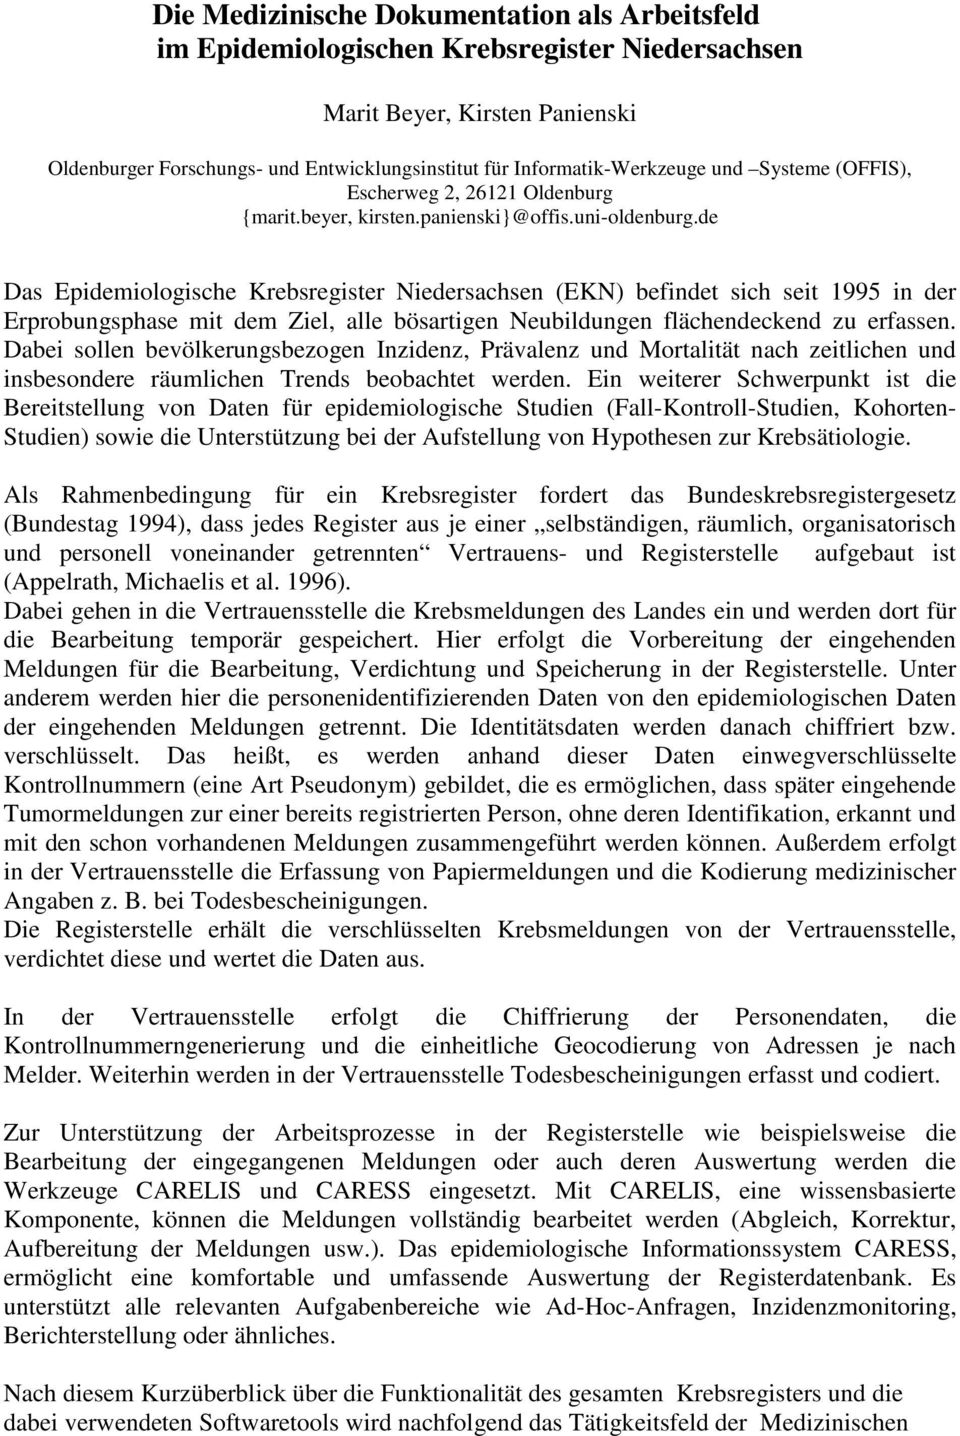 de Das Epidemiologische Krebsregister Niedersachsen (EKN) befindet sich seit 1995 in der Erprobungsphase mit dem Ziel, alle bösartigen Neubildungen flächendeckend zu erfassen.